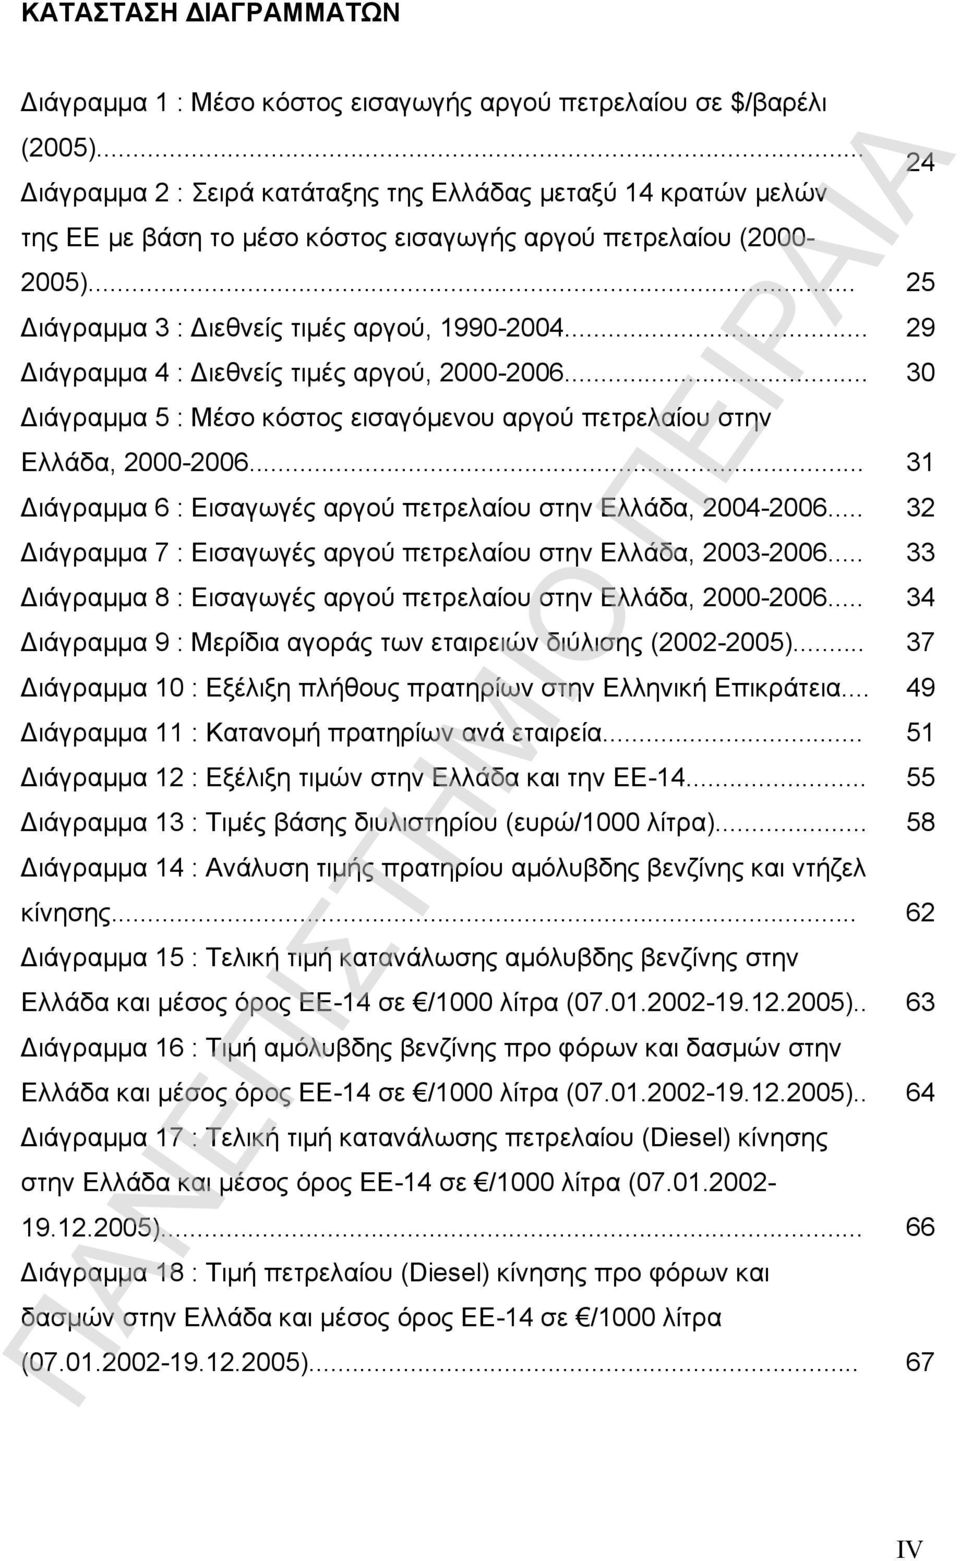 .. 29 Διάγραμμα 4 : Διεθνείς τιμές αργού, 2000-2006... 30 Διάγραμμα 5 : Μέσο κόστος εισαγόμενου αργού πετρελαίου στην Ελλάδα, 2000-2006.